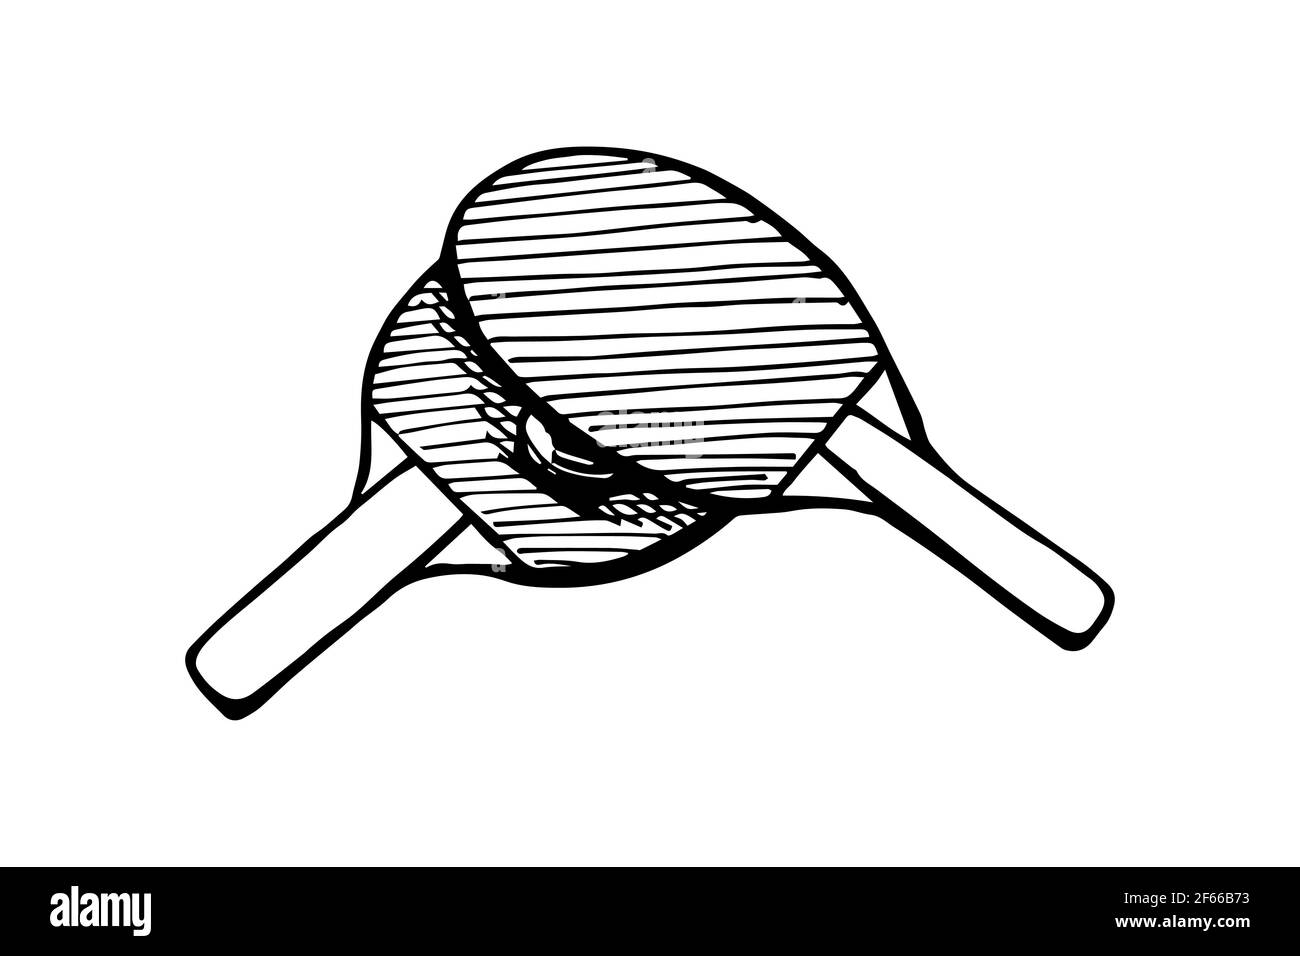 Icône représentant un contour de balle et de raquettes de ping-pong dessinées à la main.Équipement de tennis de table.Concept du logo des pagaies de jeu de ping-pong.Illustration isolée à l'encre noire vectorielle sur fond blanc Illustration de Vecteur